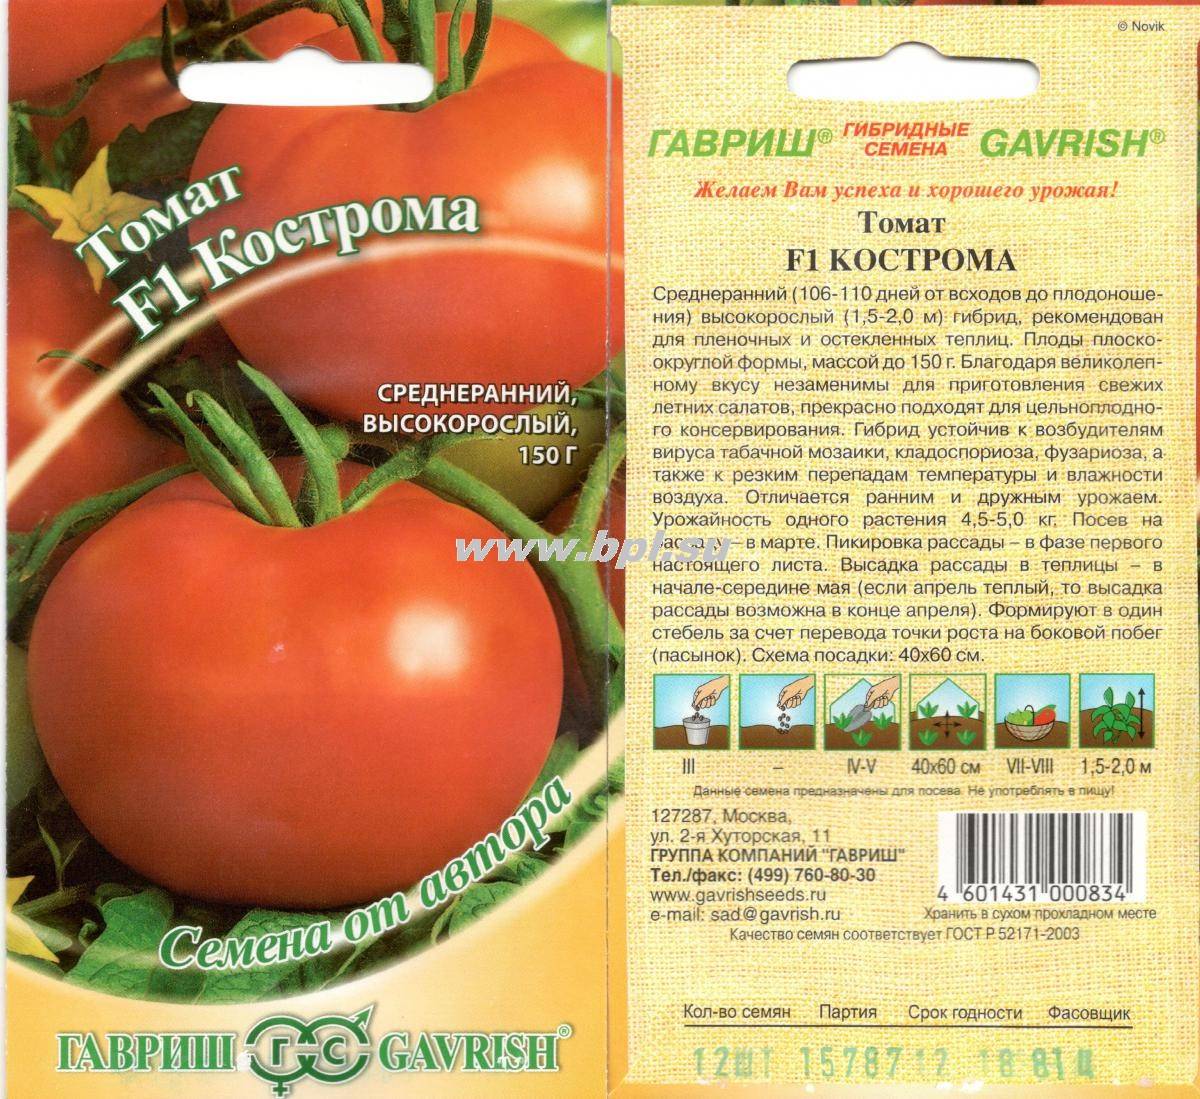 Отзыв: томаты тепличные greenhouse - qaztomat - вкусные и ароматные томаты ☑️ не резиновые и не пластмассовые ☺️⚘